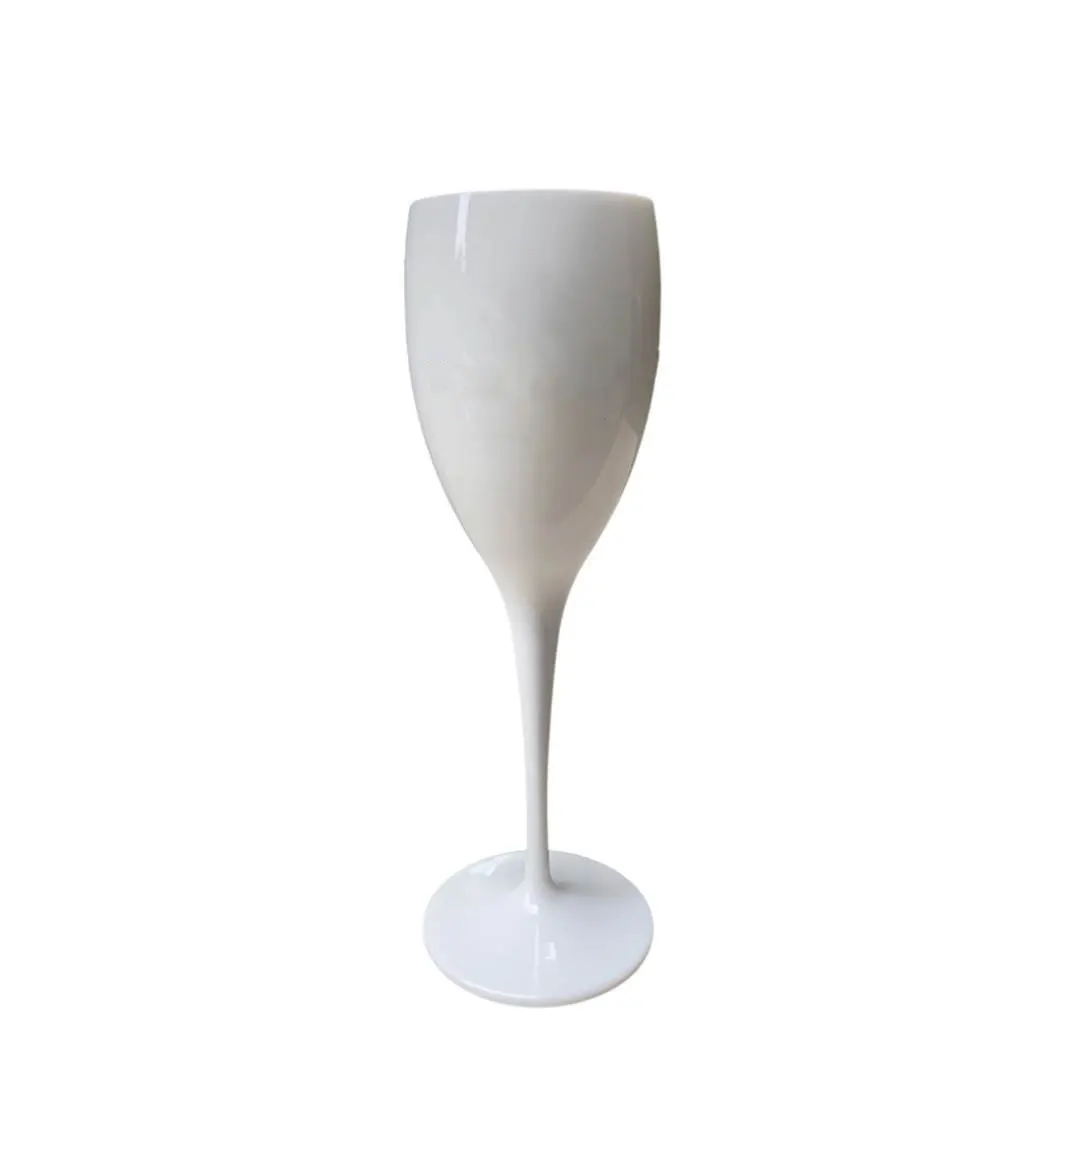 OEMカスタムストックアイスインペリアルレタリング飲用グラスゴブレットフルートアクリルブラックホワイトプラスチックシャンパンワインゴブレットグラス